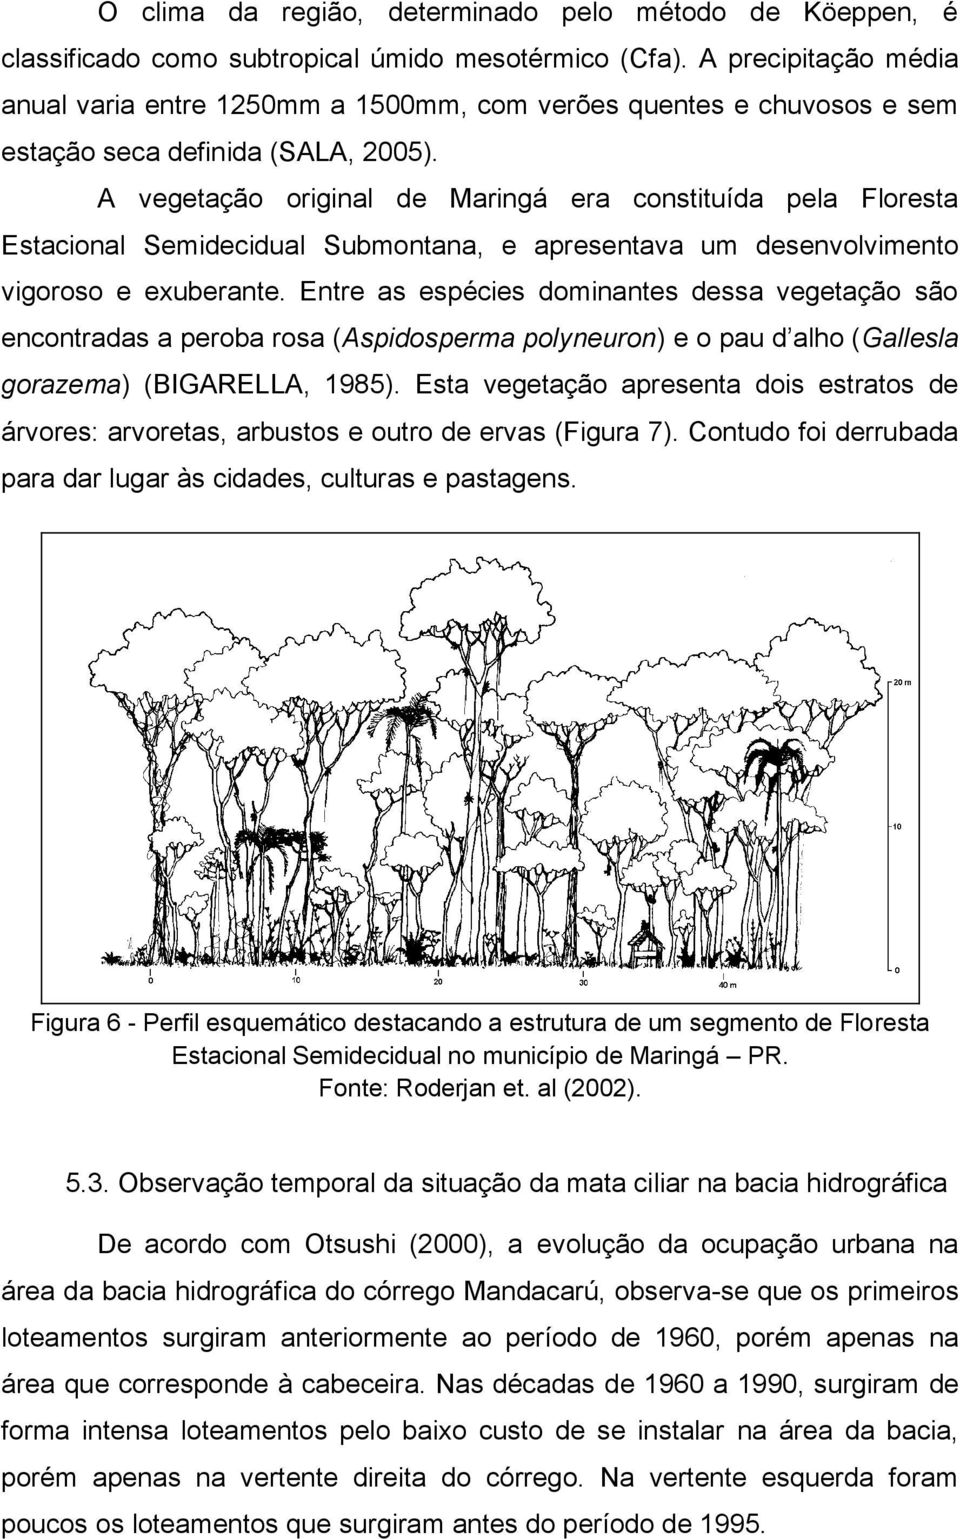 A vegetação original de Maringá era constituída pela Floresta Estacional Semidecidual Submontana, e apresentava um desenvolvimento vigoroso e exuberante.